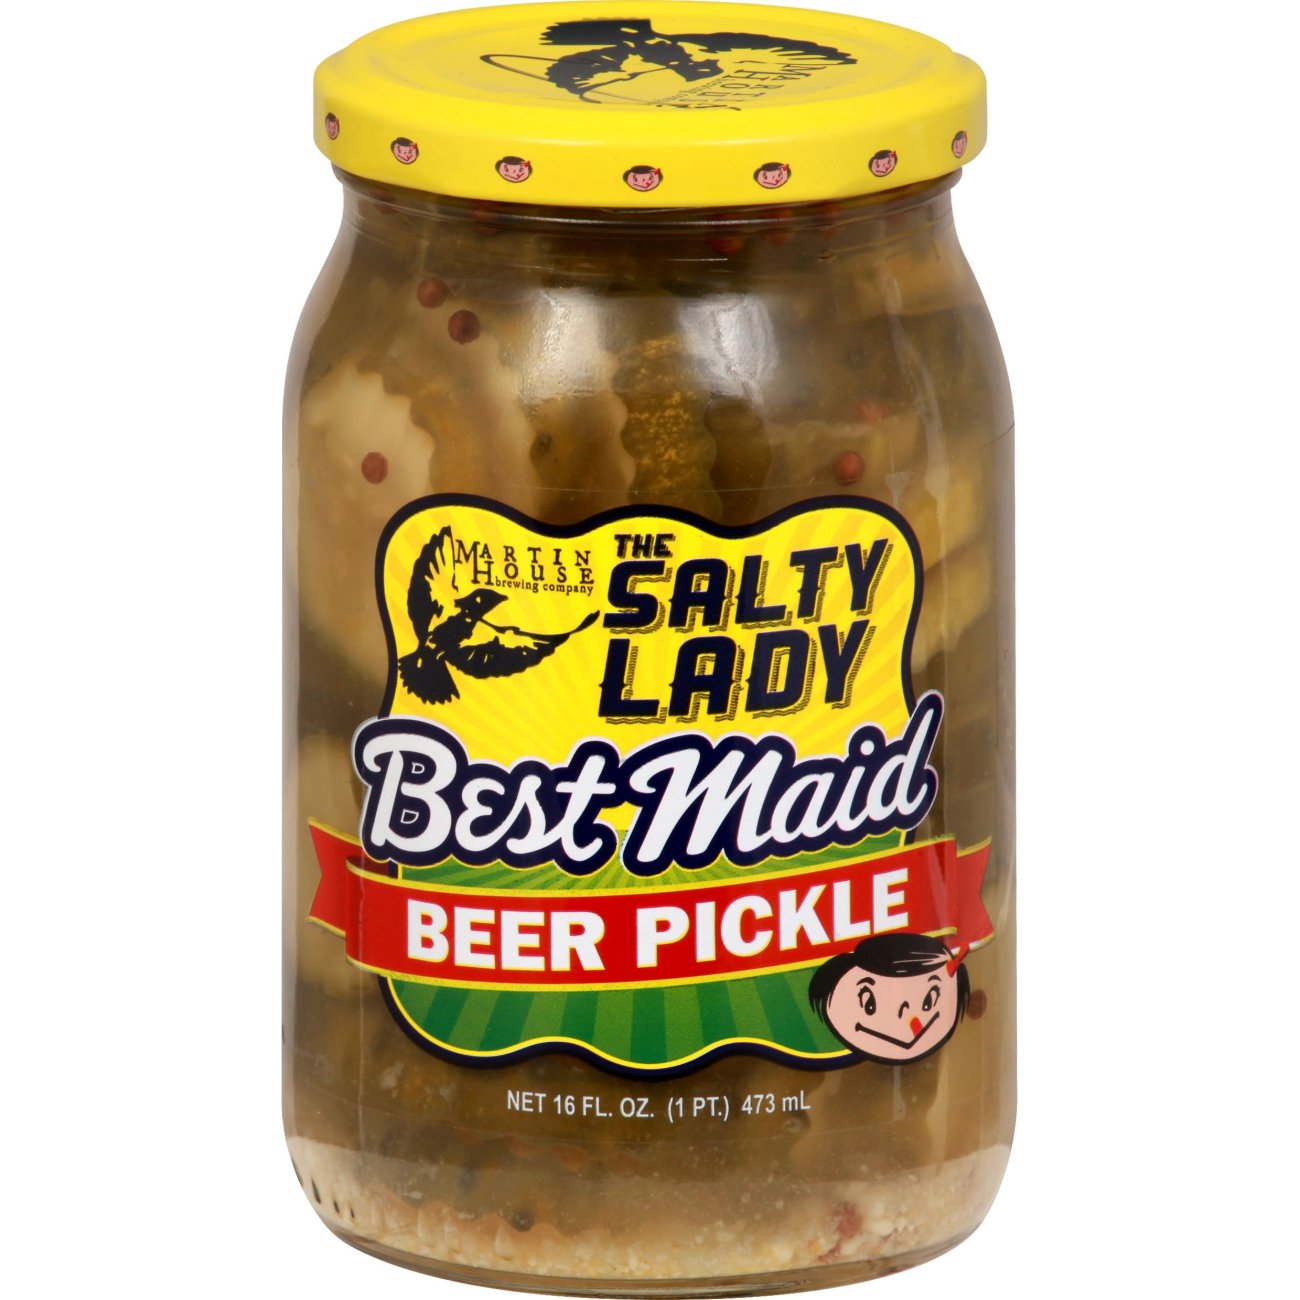 Best Maid Beer Pickles